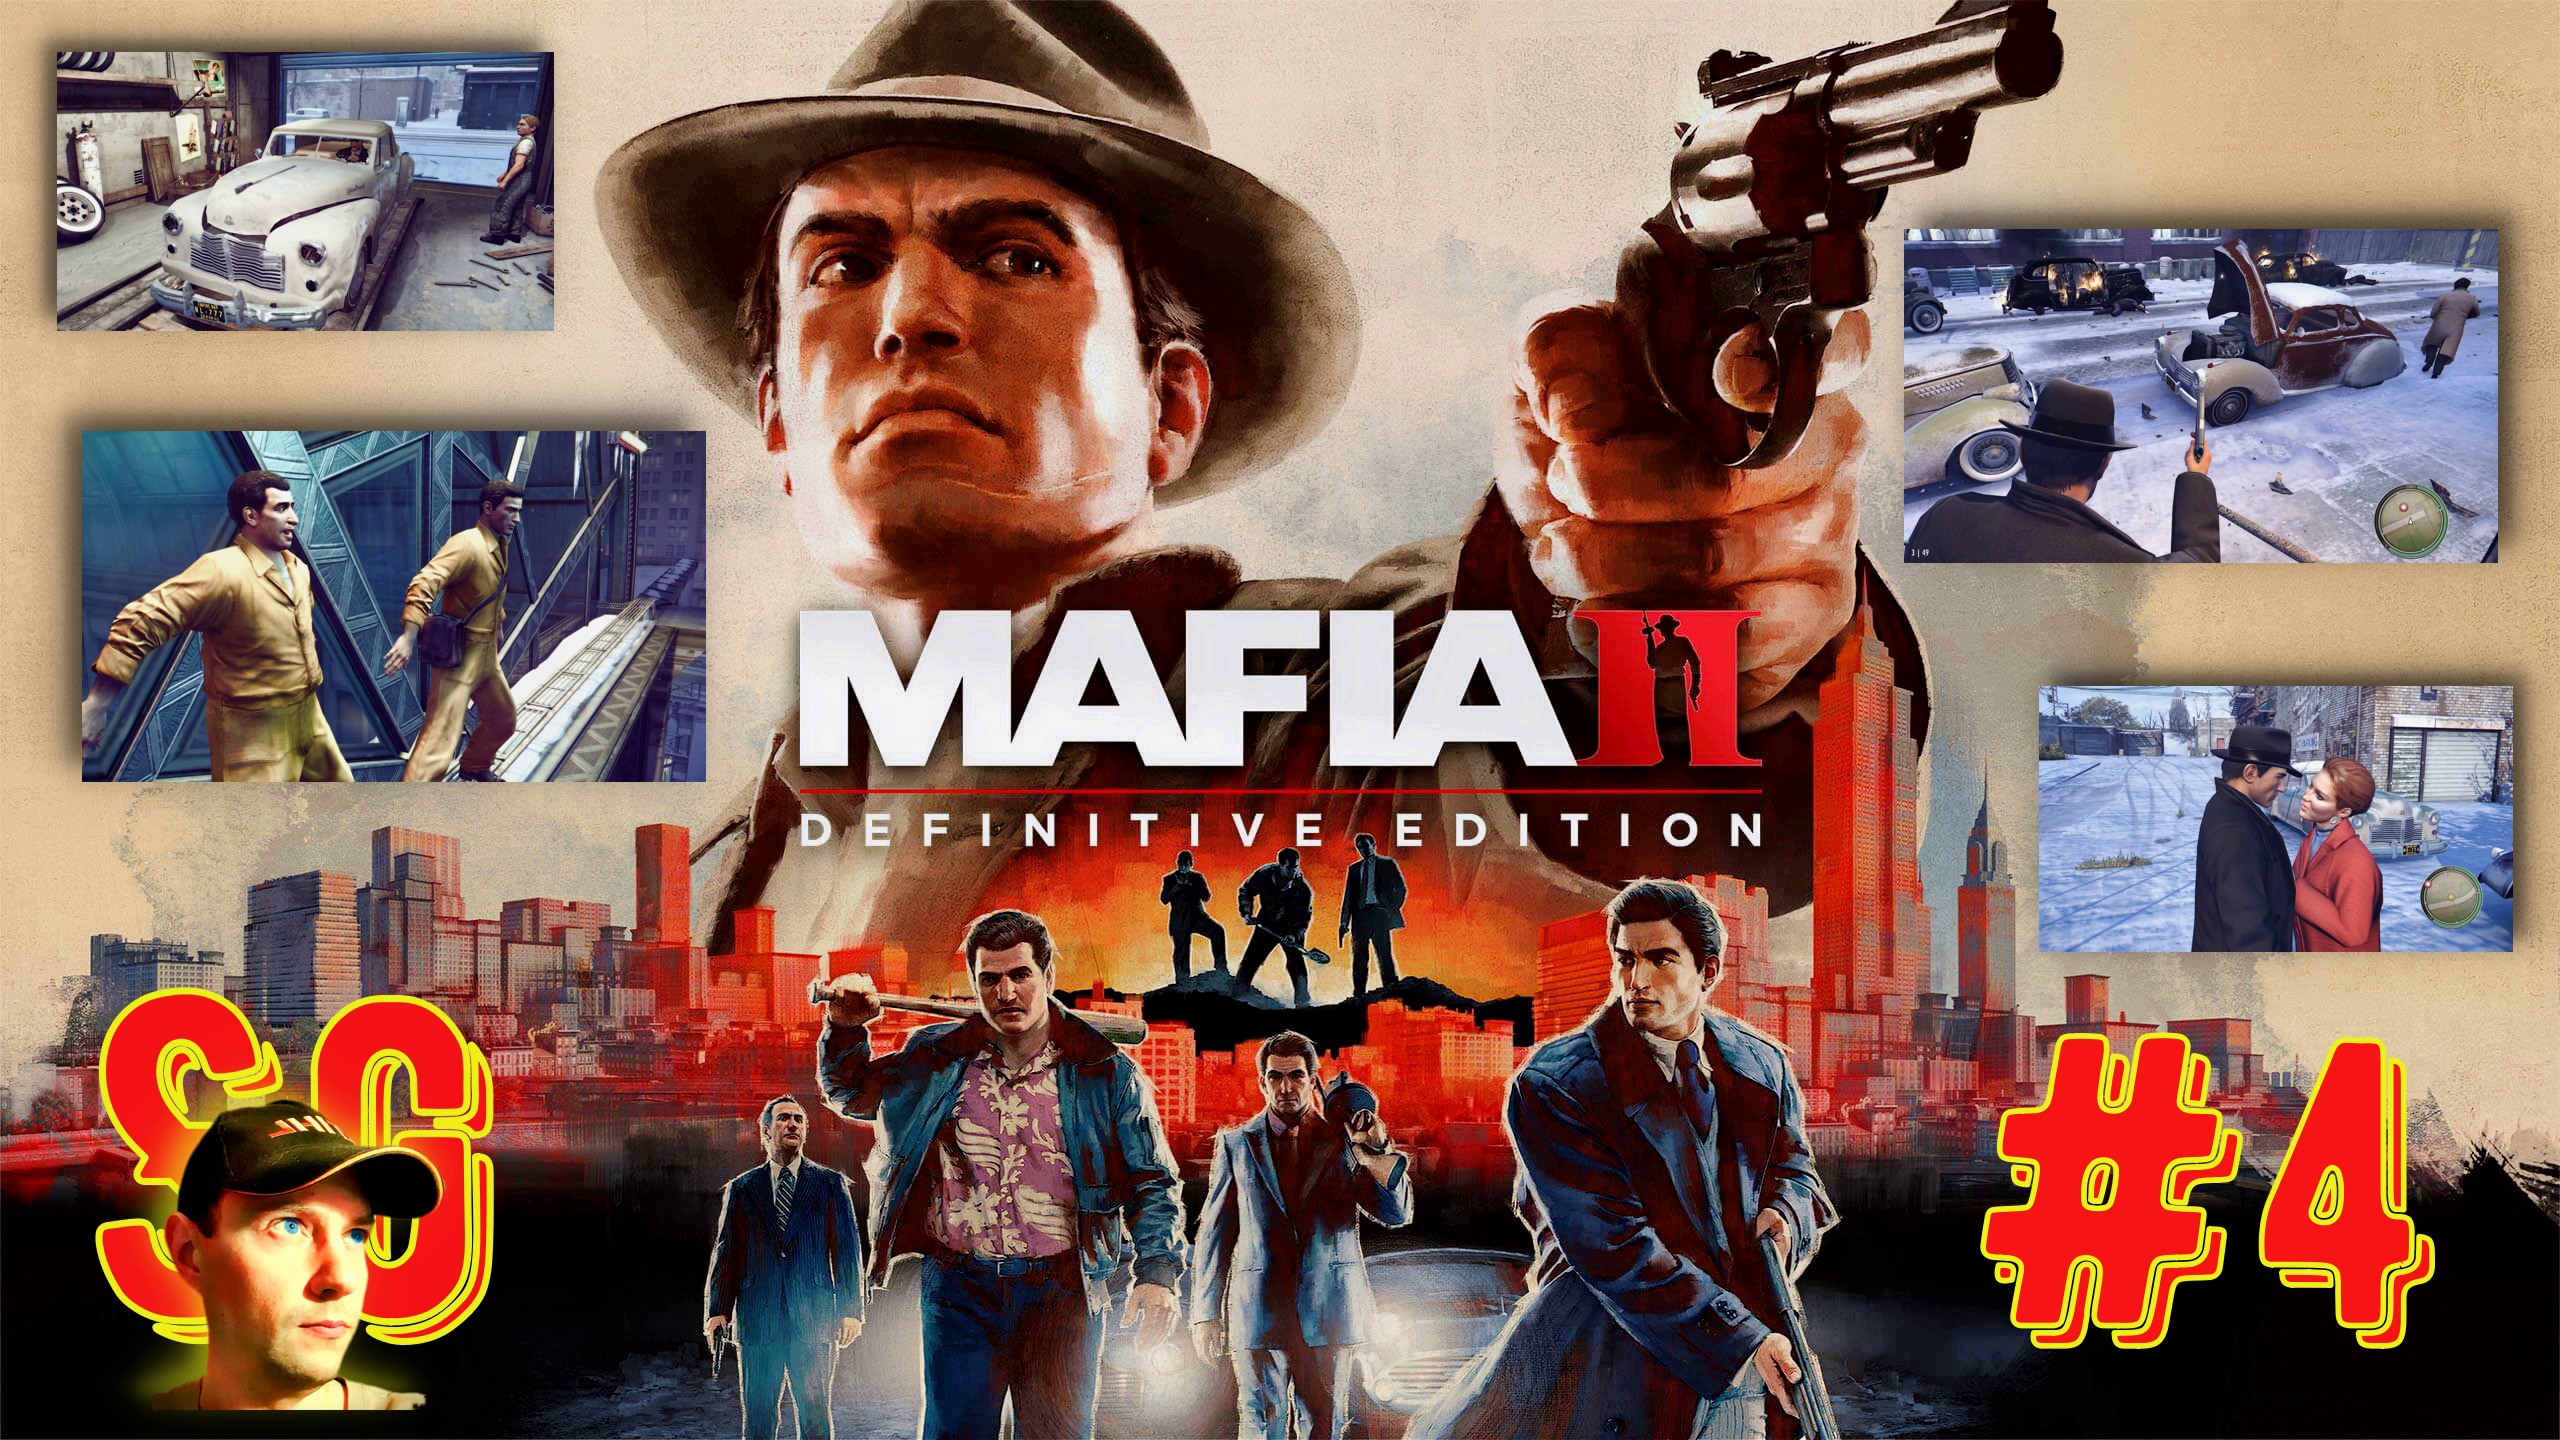 #4 МАФИЯ 2. Mafia II: Definitive Edition. Игрофильм. Ограбление ювелирки. Устранение неугодных Мафии